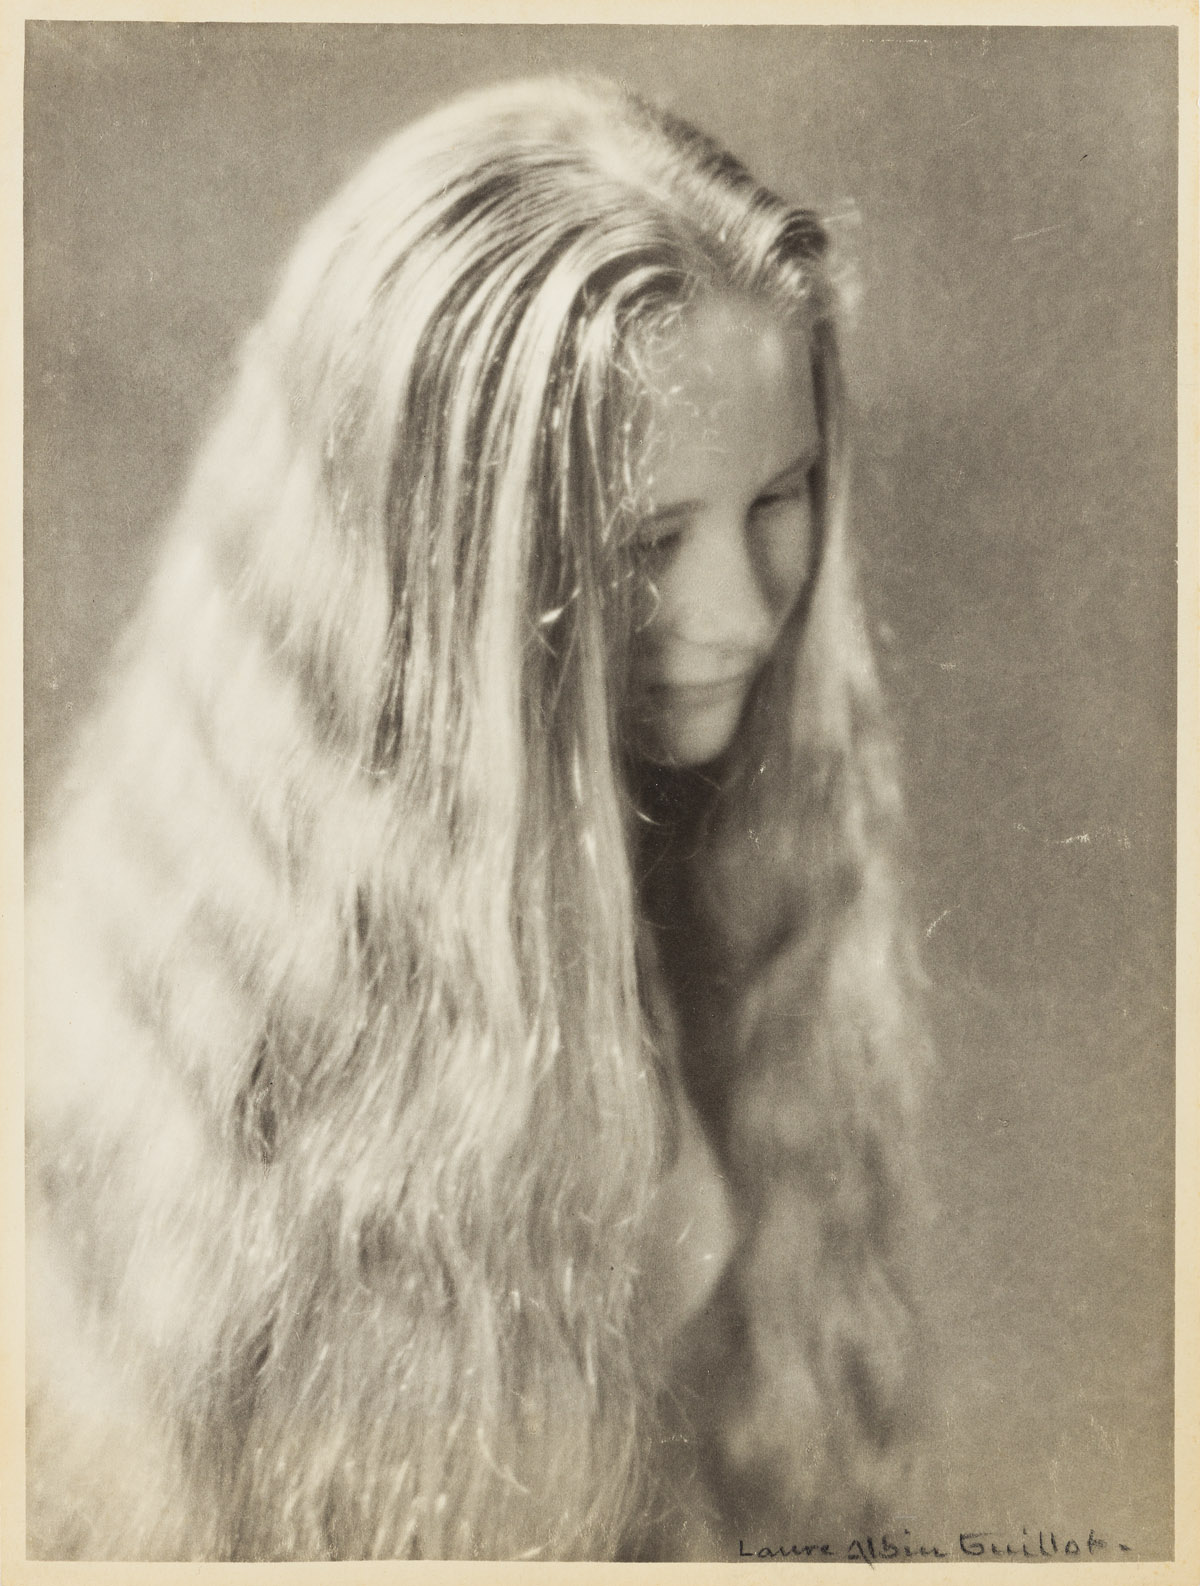 LAURE ALBIN-GUILLOT (1879-1962) Portrait of a Woman.